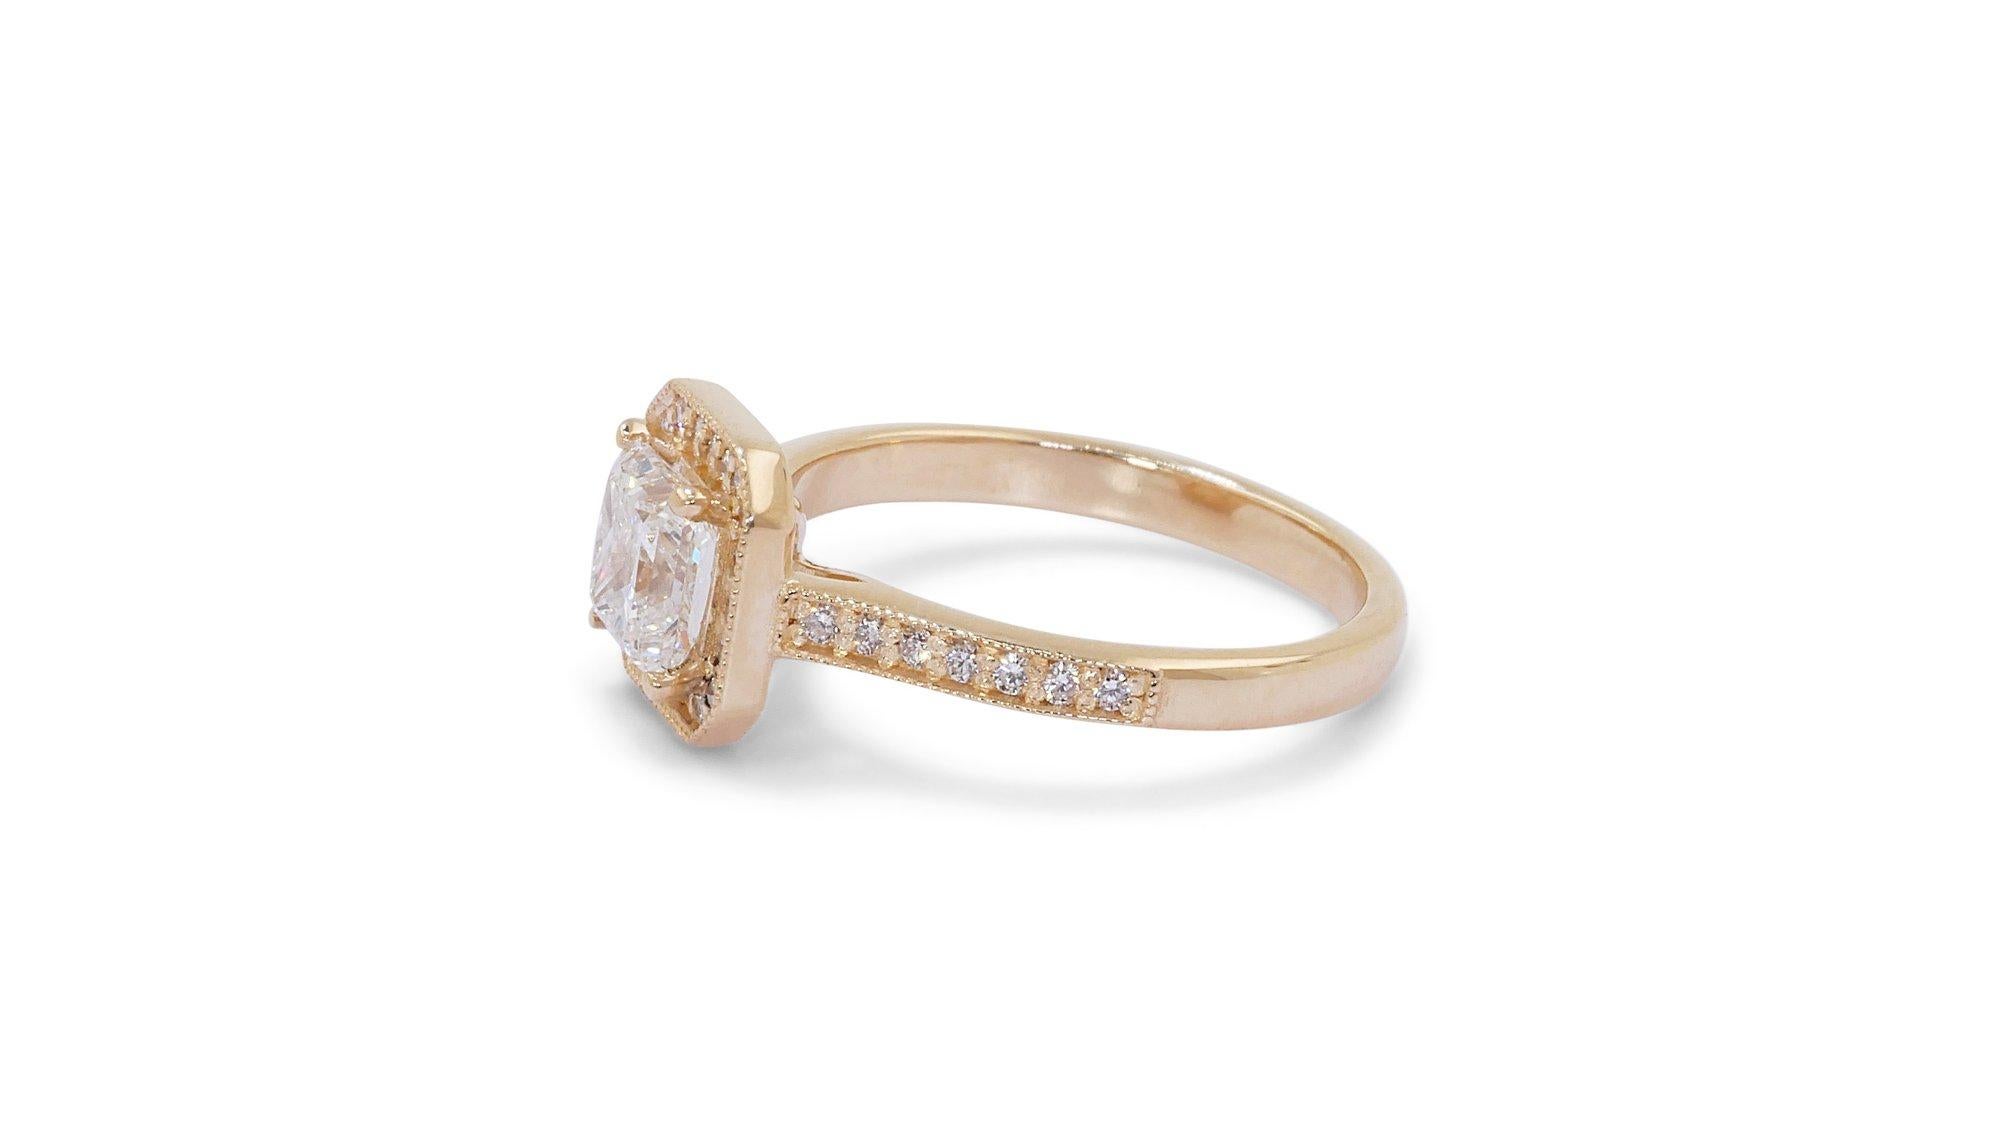 Stunning 1.35 total ct Princess Diamond Ring in 18K Yellow Gold w/ IGI Cert 1